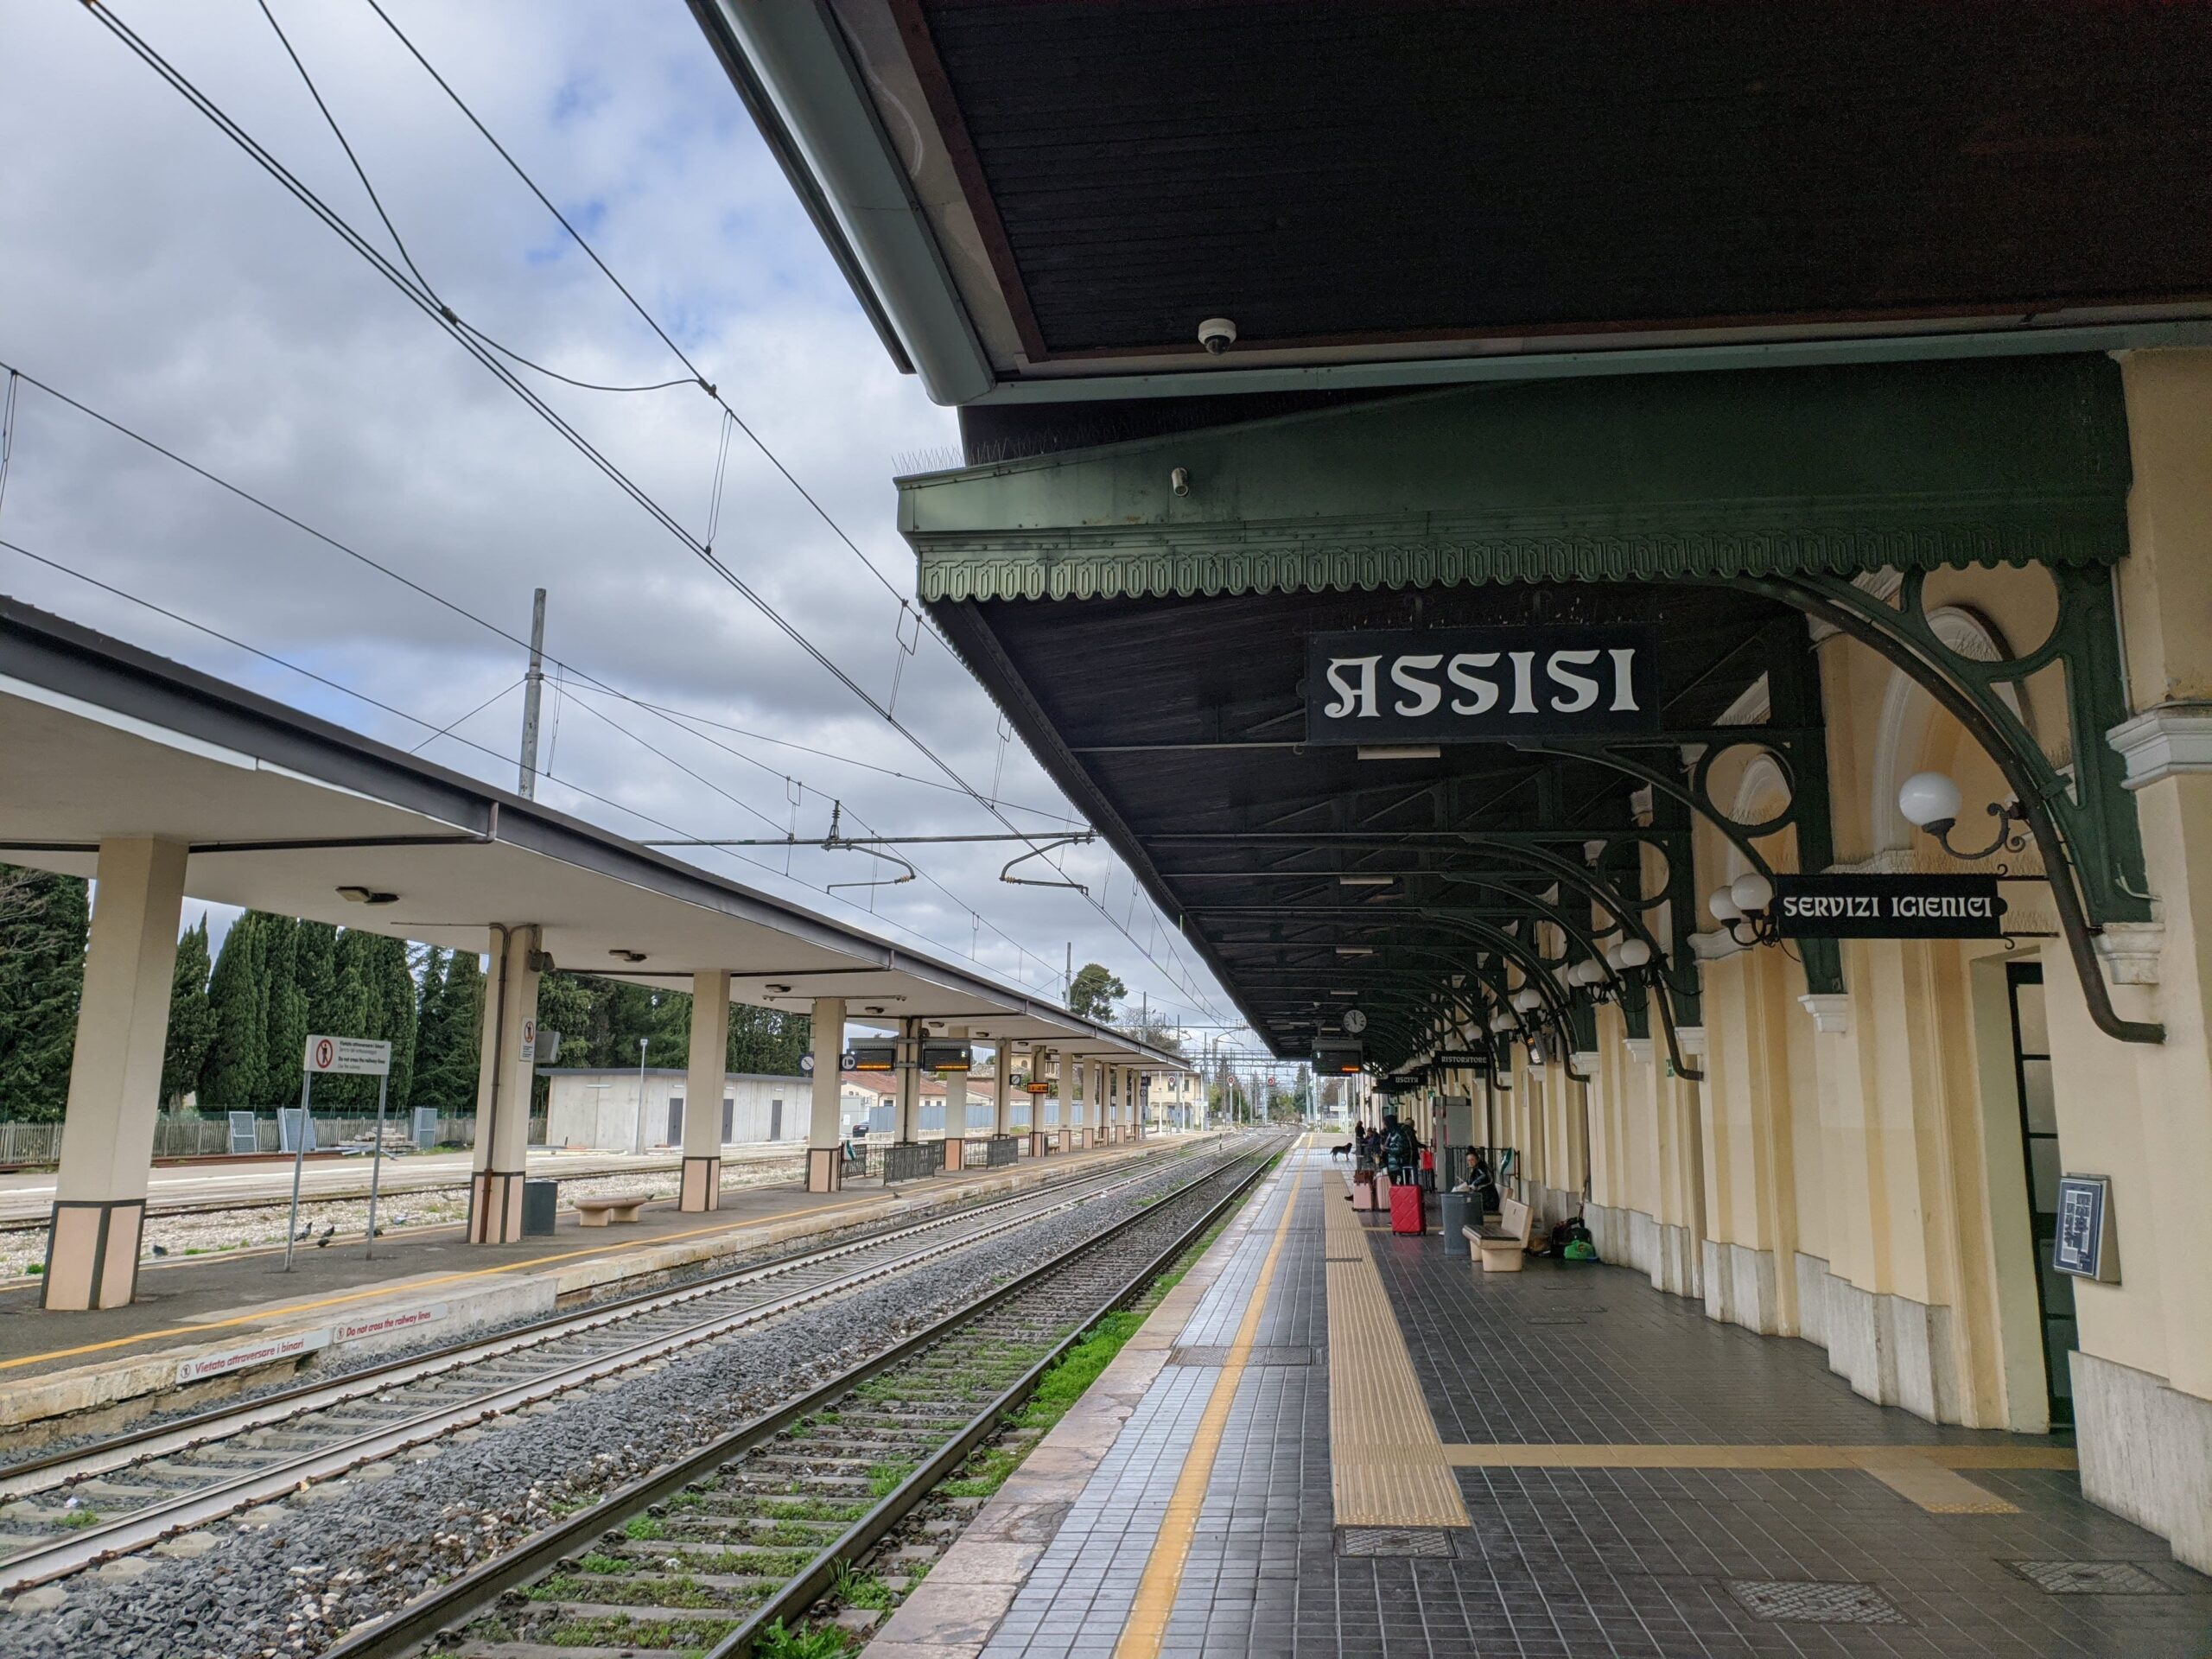 Plataforma da estação de trem de Assisi, com bancos vazios e um trem parado à distância, sob um céu nublado, indicando a chegada ou partida de Assis.